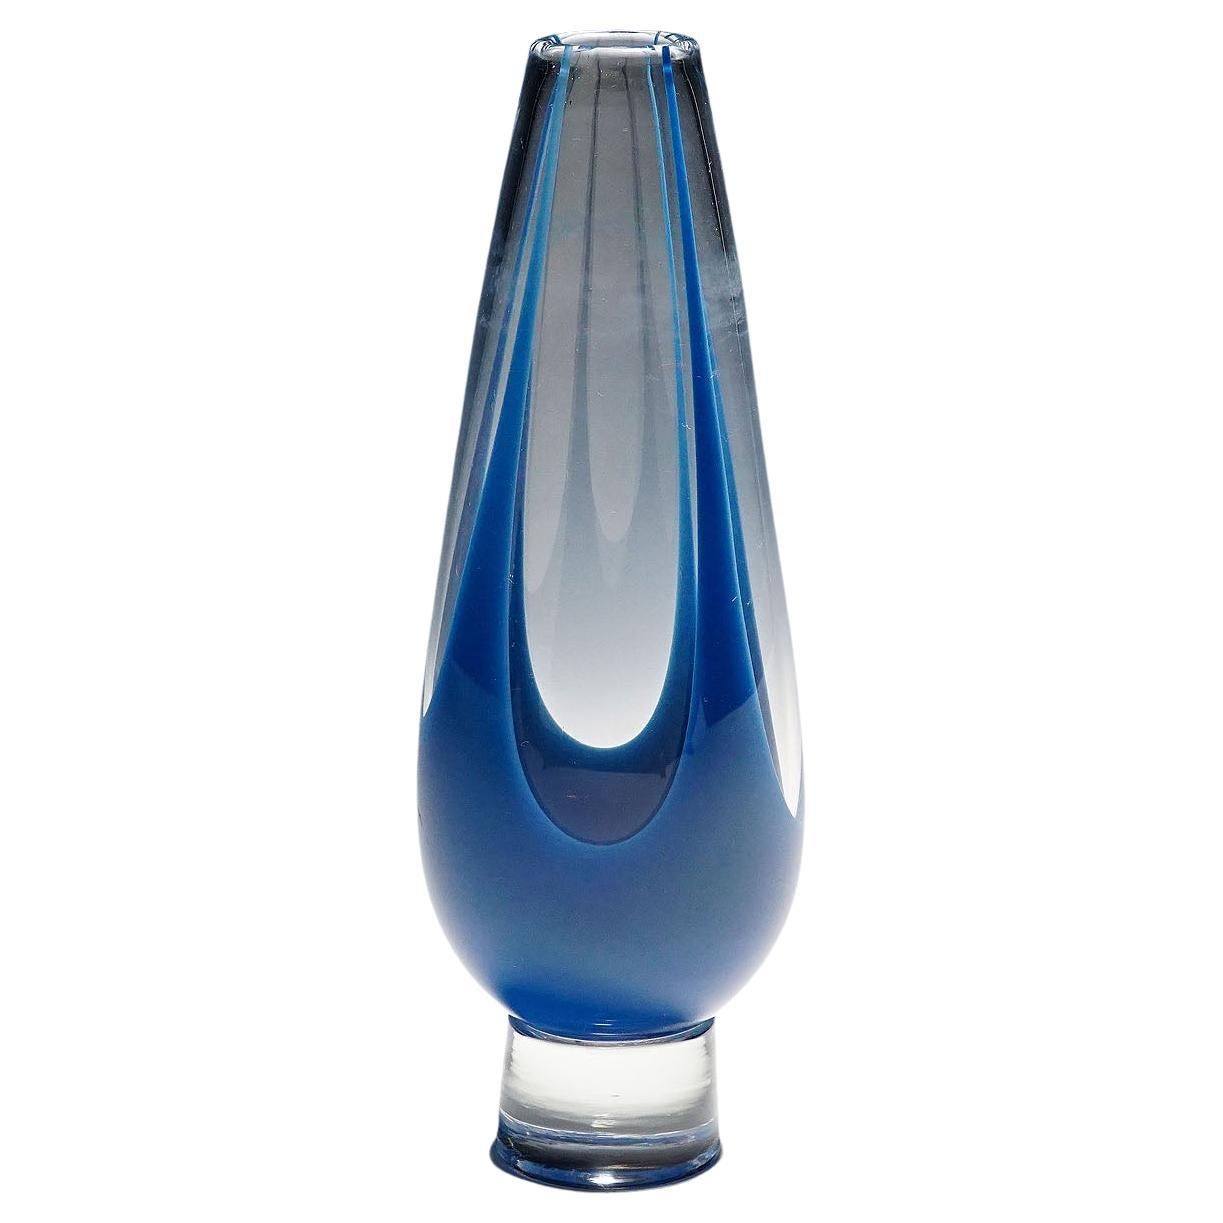 Vintage Art Glass Vase by Vicke Lindstrand for Kosta 1950s